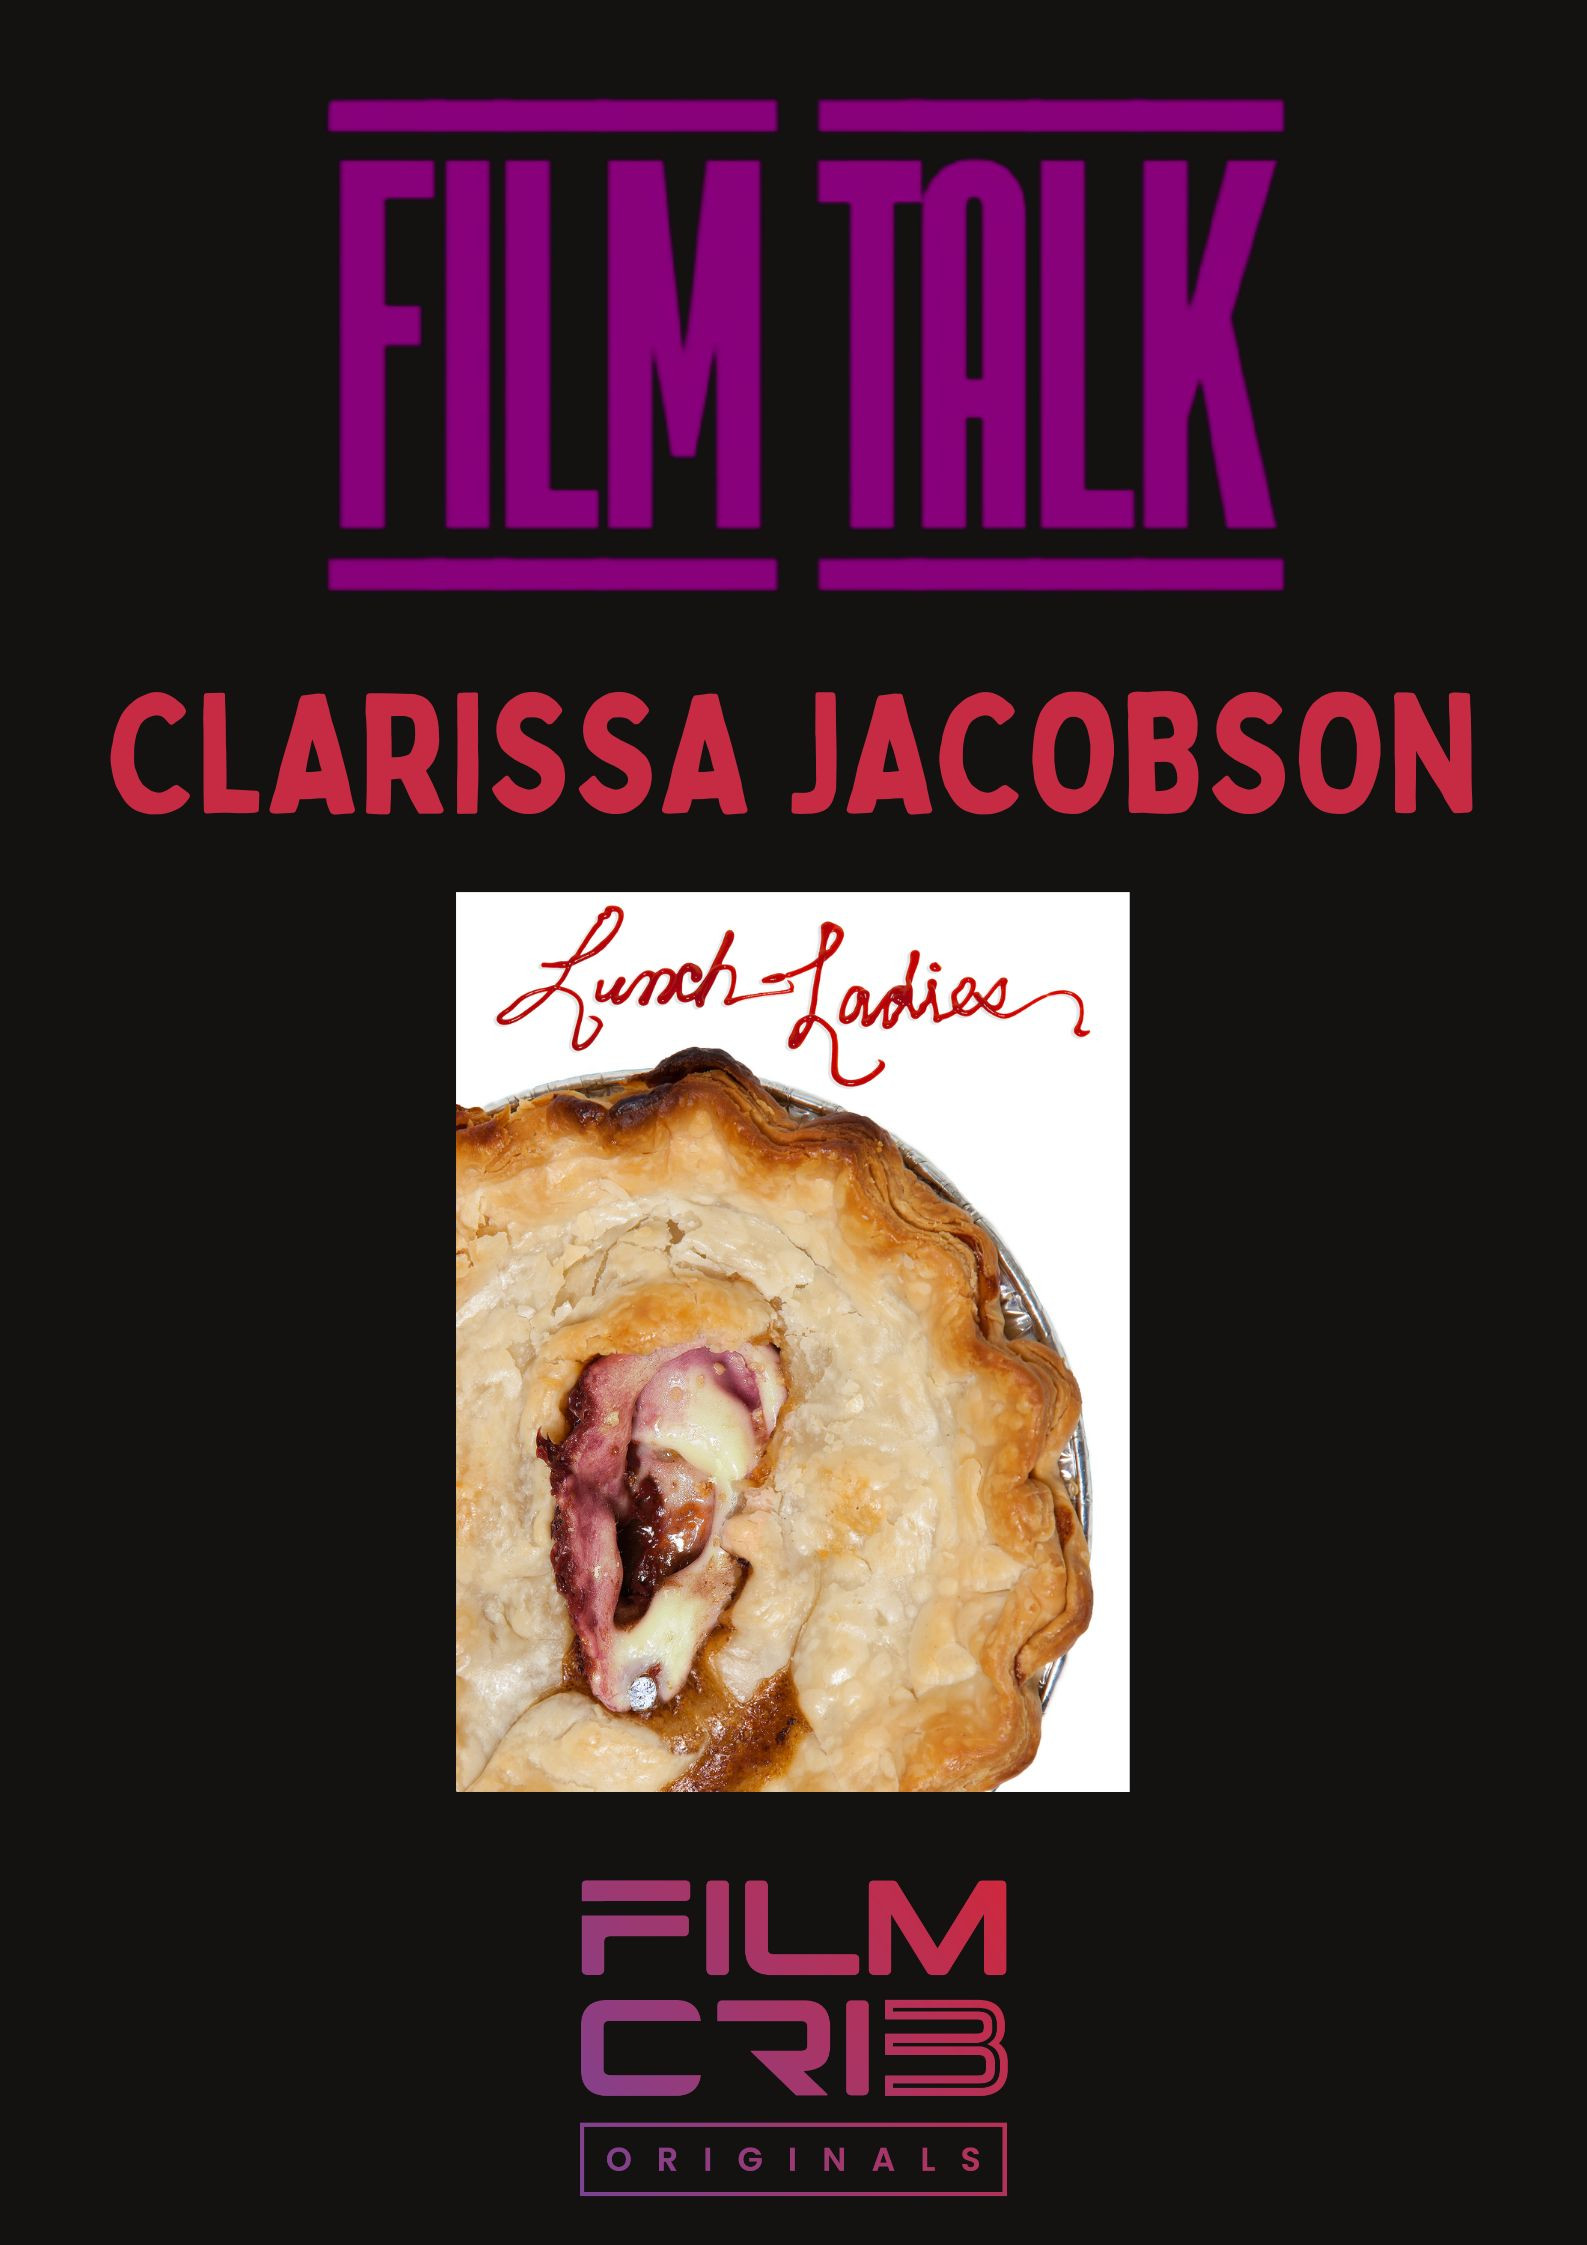 Film Talk - Clarissa Jacobson